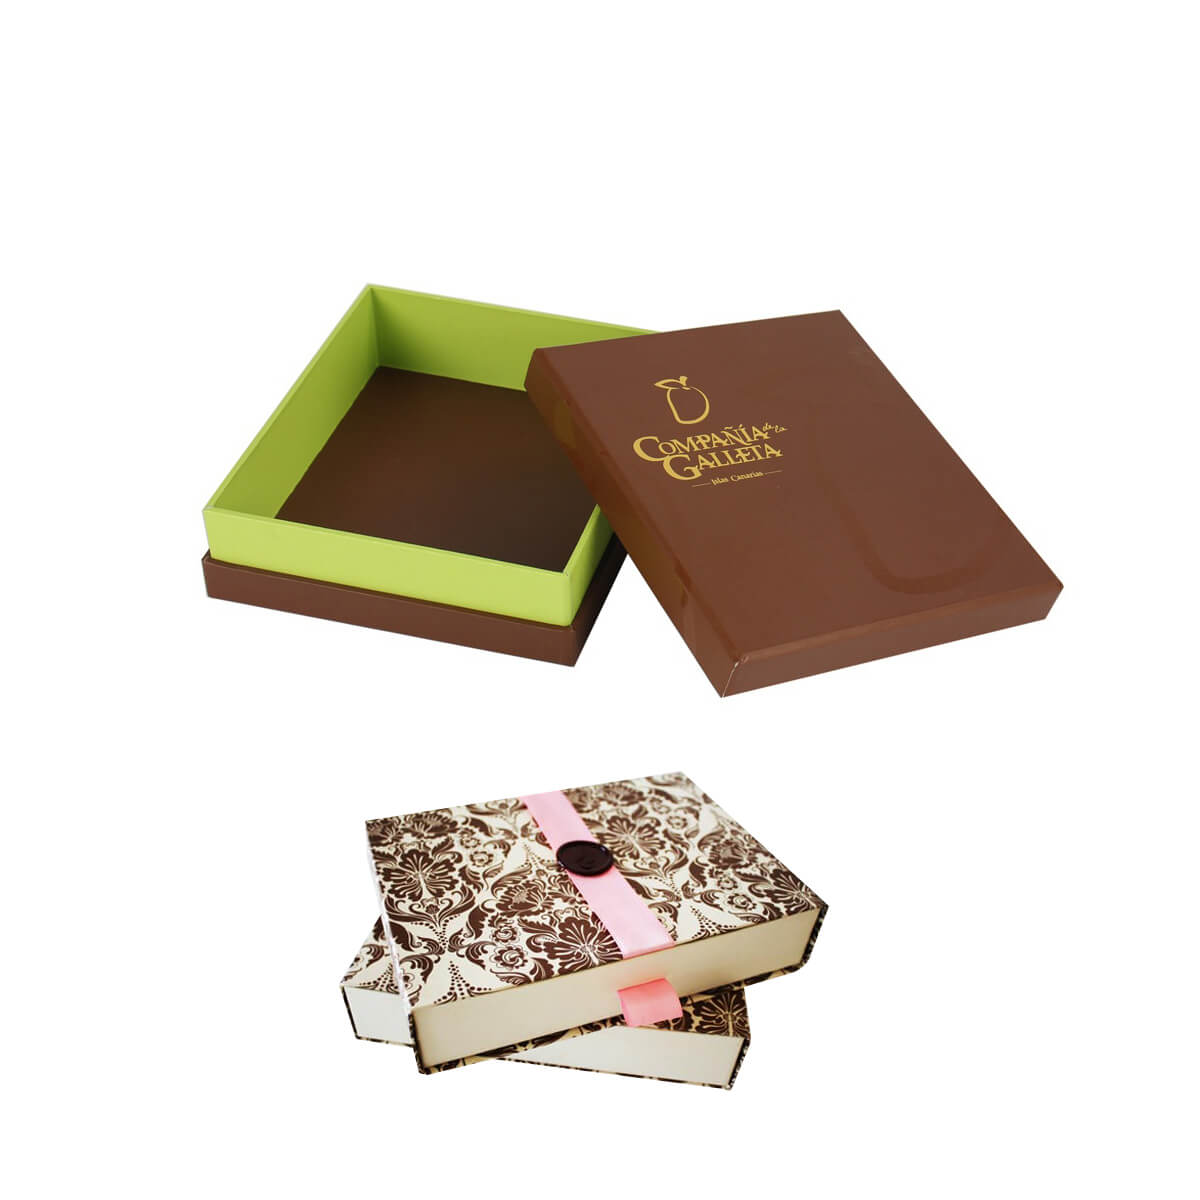 Custom chocolate boxes deluxeboxes